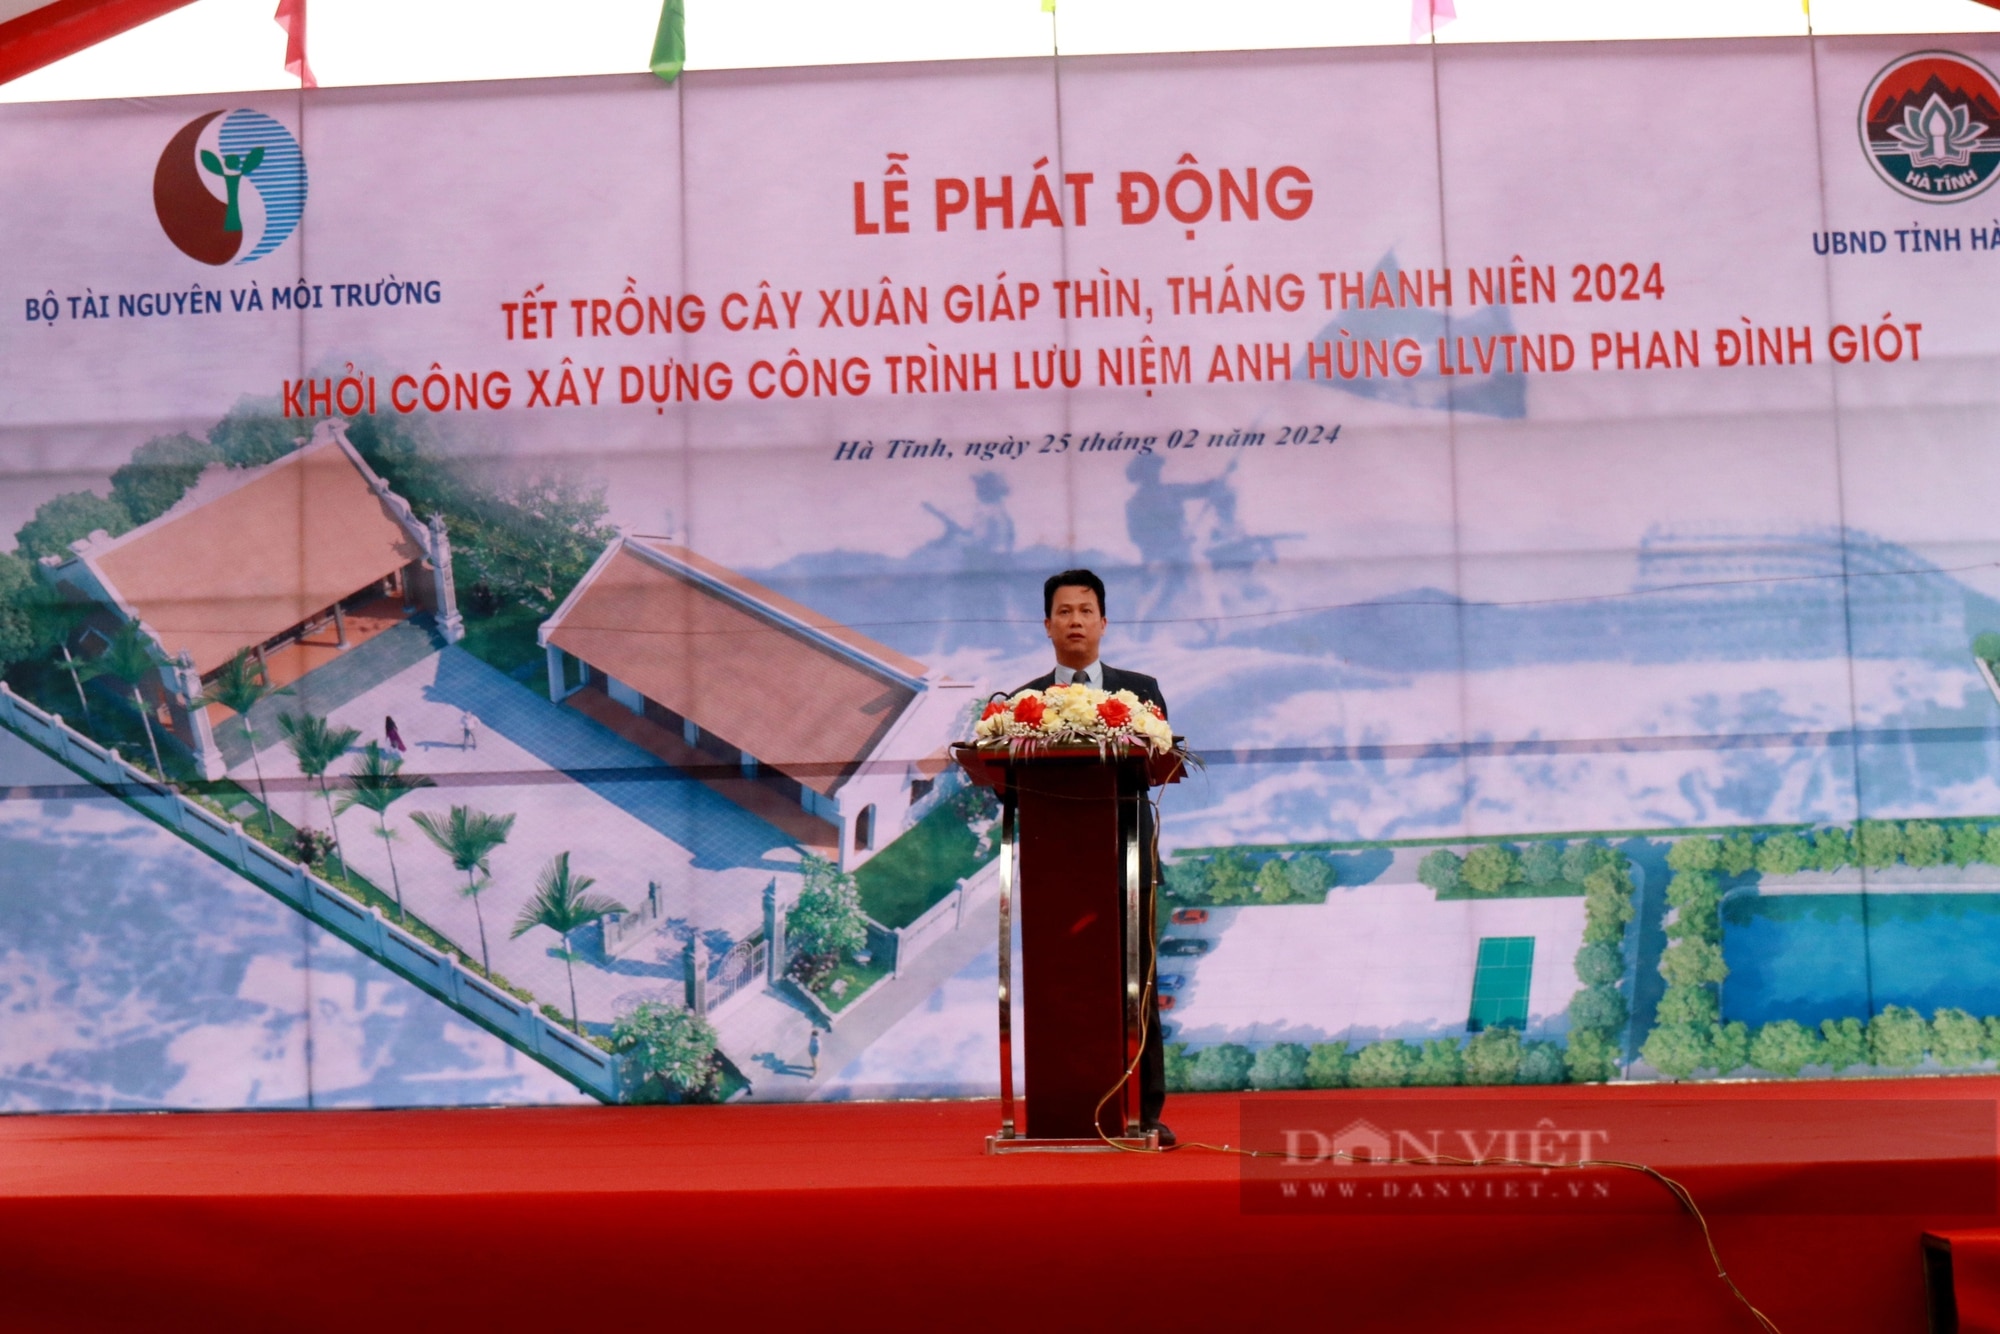 Bộ Tài nguyên và Môi trường trồng 120.000 cây phi lao chắn sóng, khởi công xây dựng nhà lưu niệm Anh hùng Phan Đình Giót- Ảnh 3.